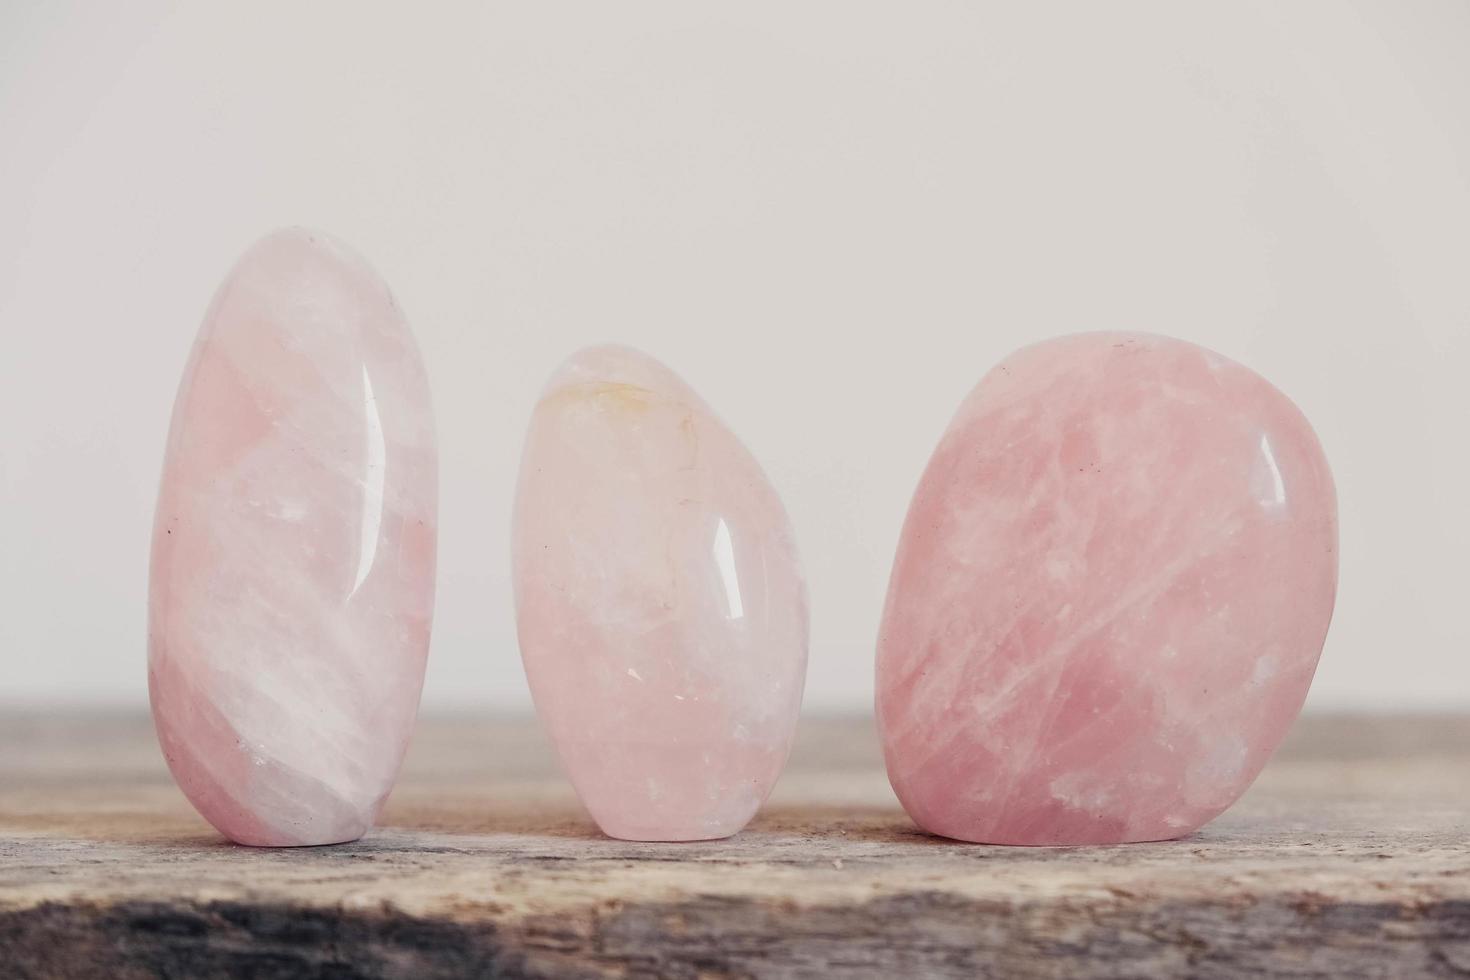 cristalli lucidati pietra preziosa di quarzo rosa su un tavolo di legno foto